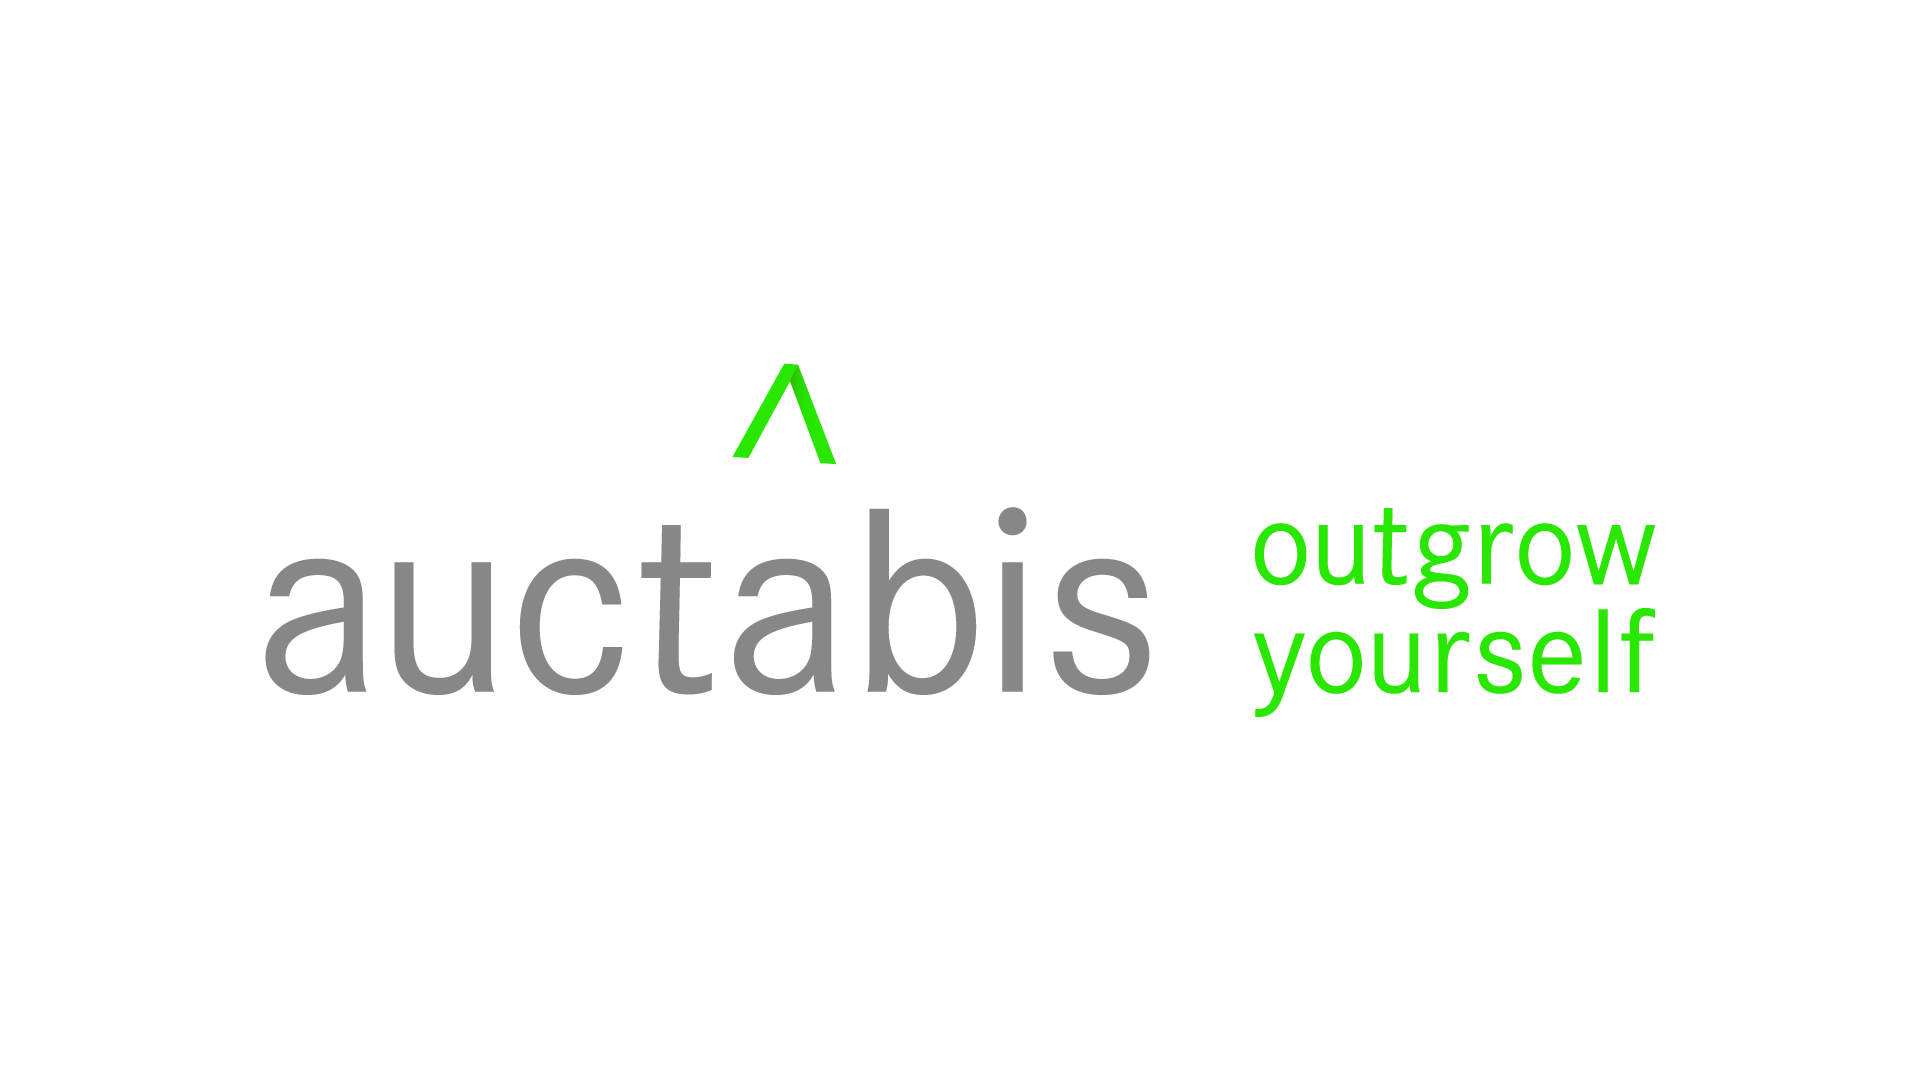 auctabis outgrow yourself unternehmensberatung branding jahnkedesign ffm